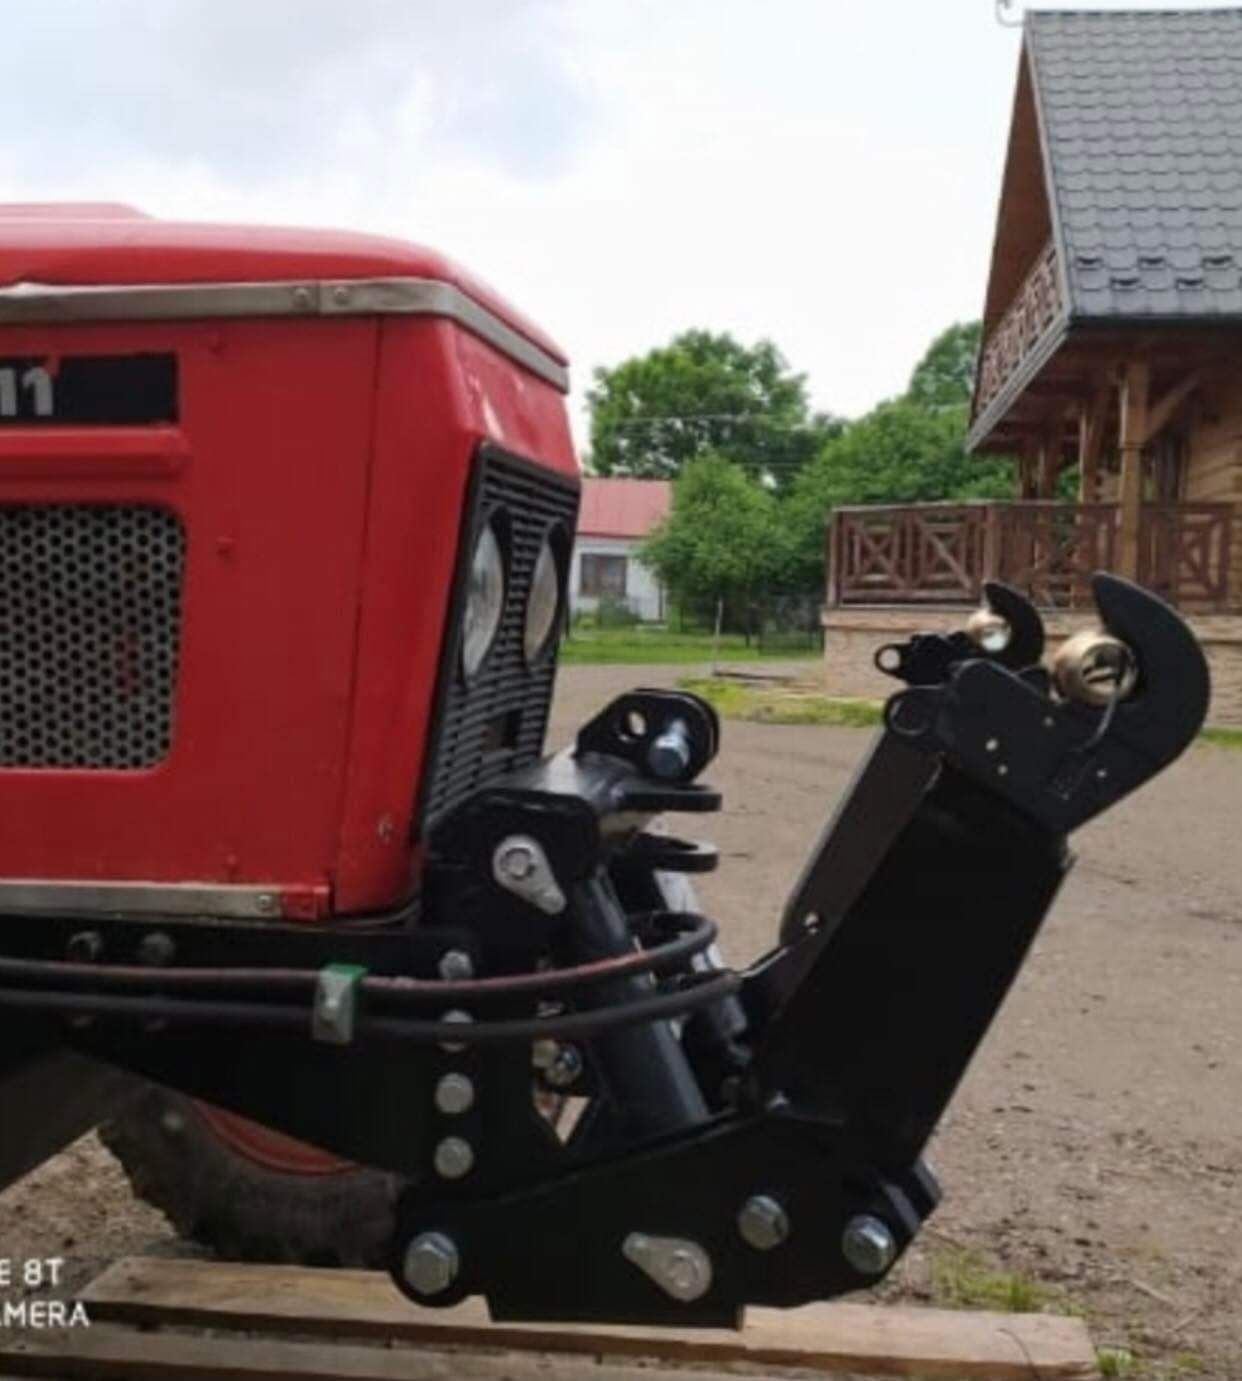 Nowy tuz przedni do traktora udźwig 3 tony nowy możliwy montaż Dostawa